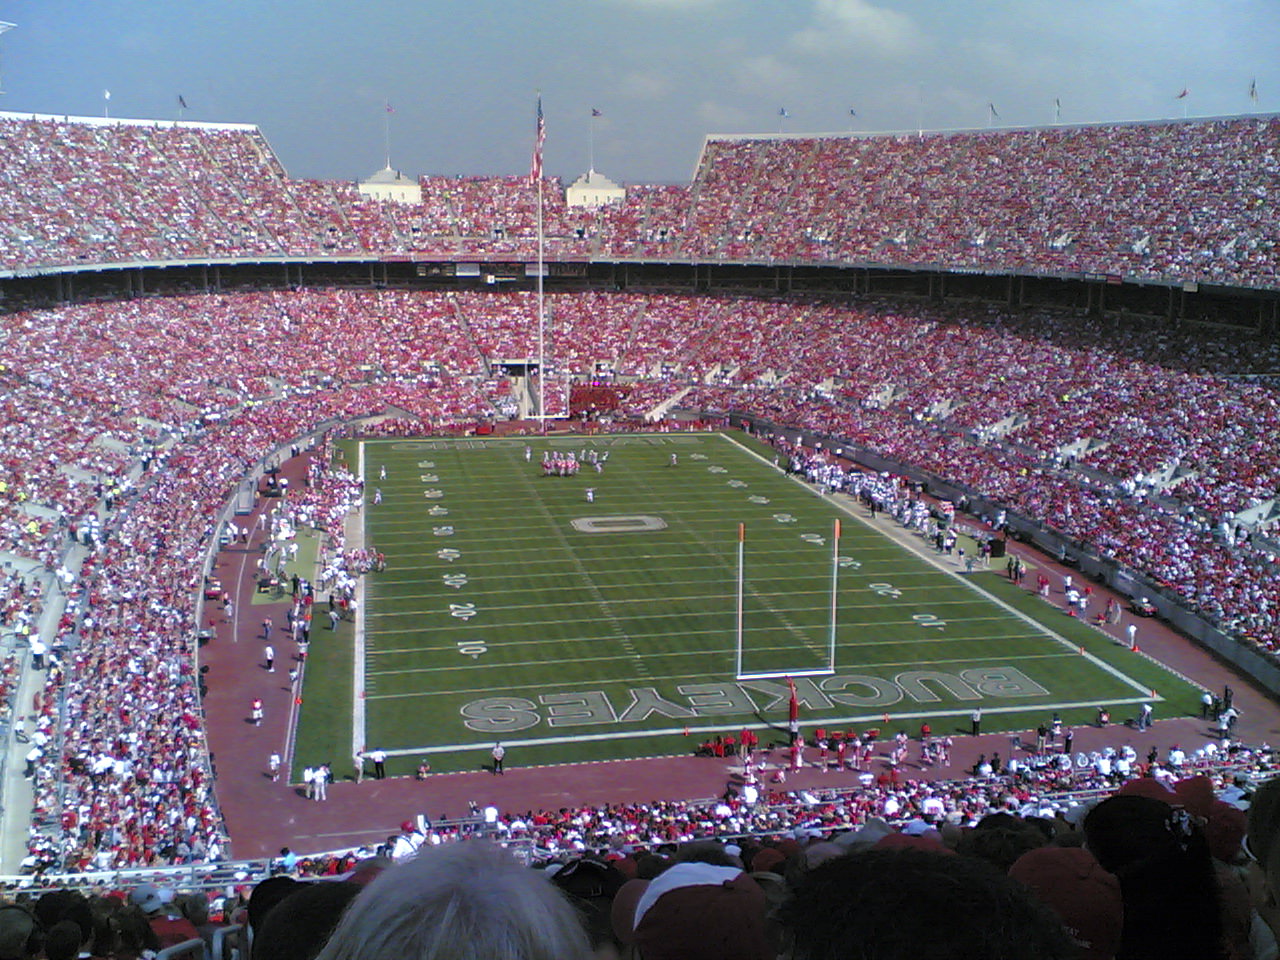 Ohio stadium with 105000 peeps